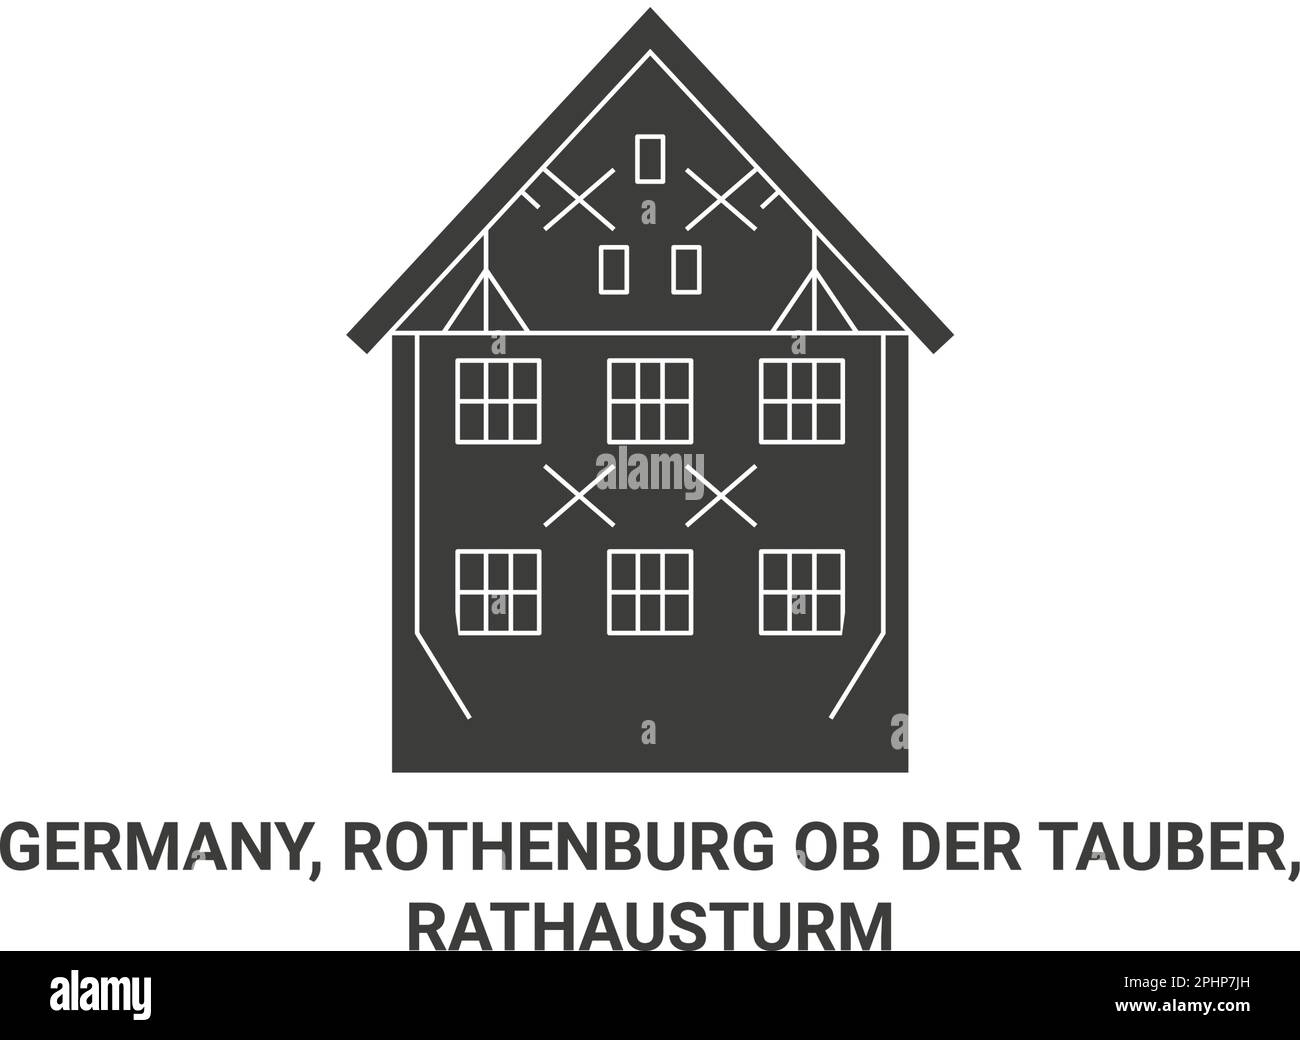 Deutschland, Rothenburg ob der Tauber, Rathausturm travel Landmark Vector Illustration Stock Vektor